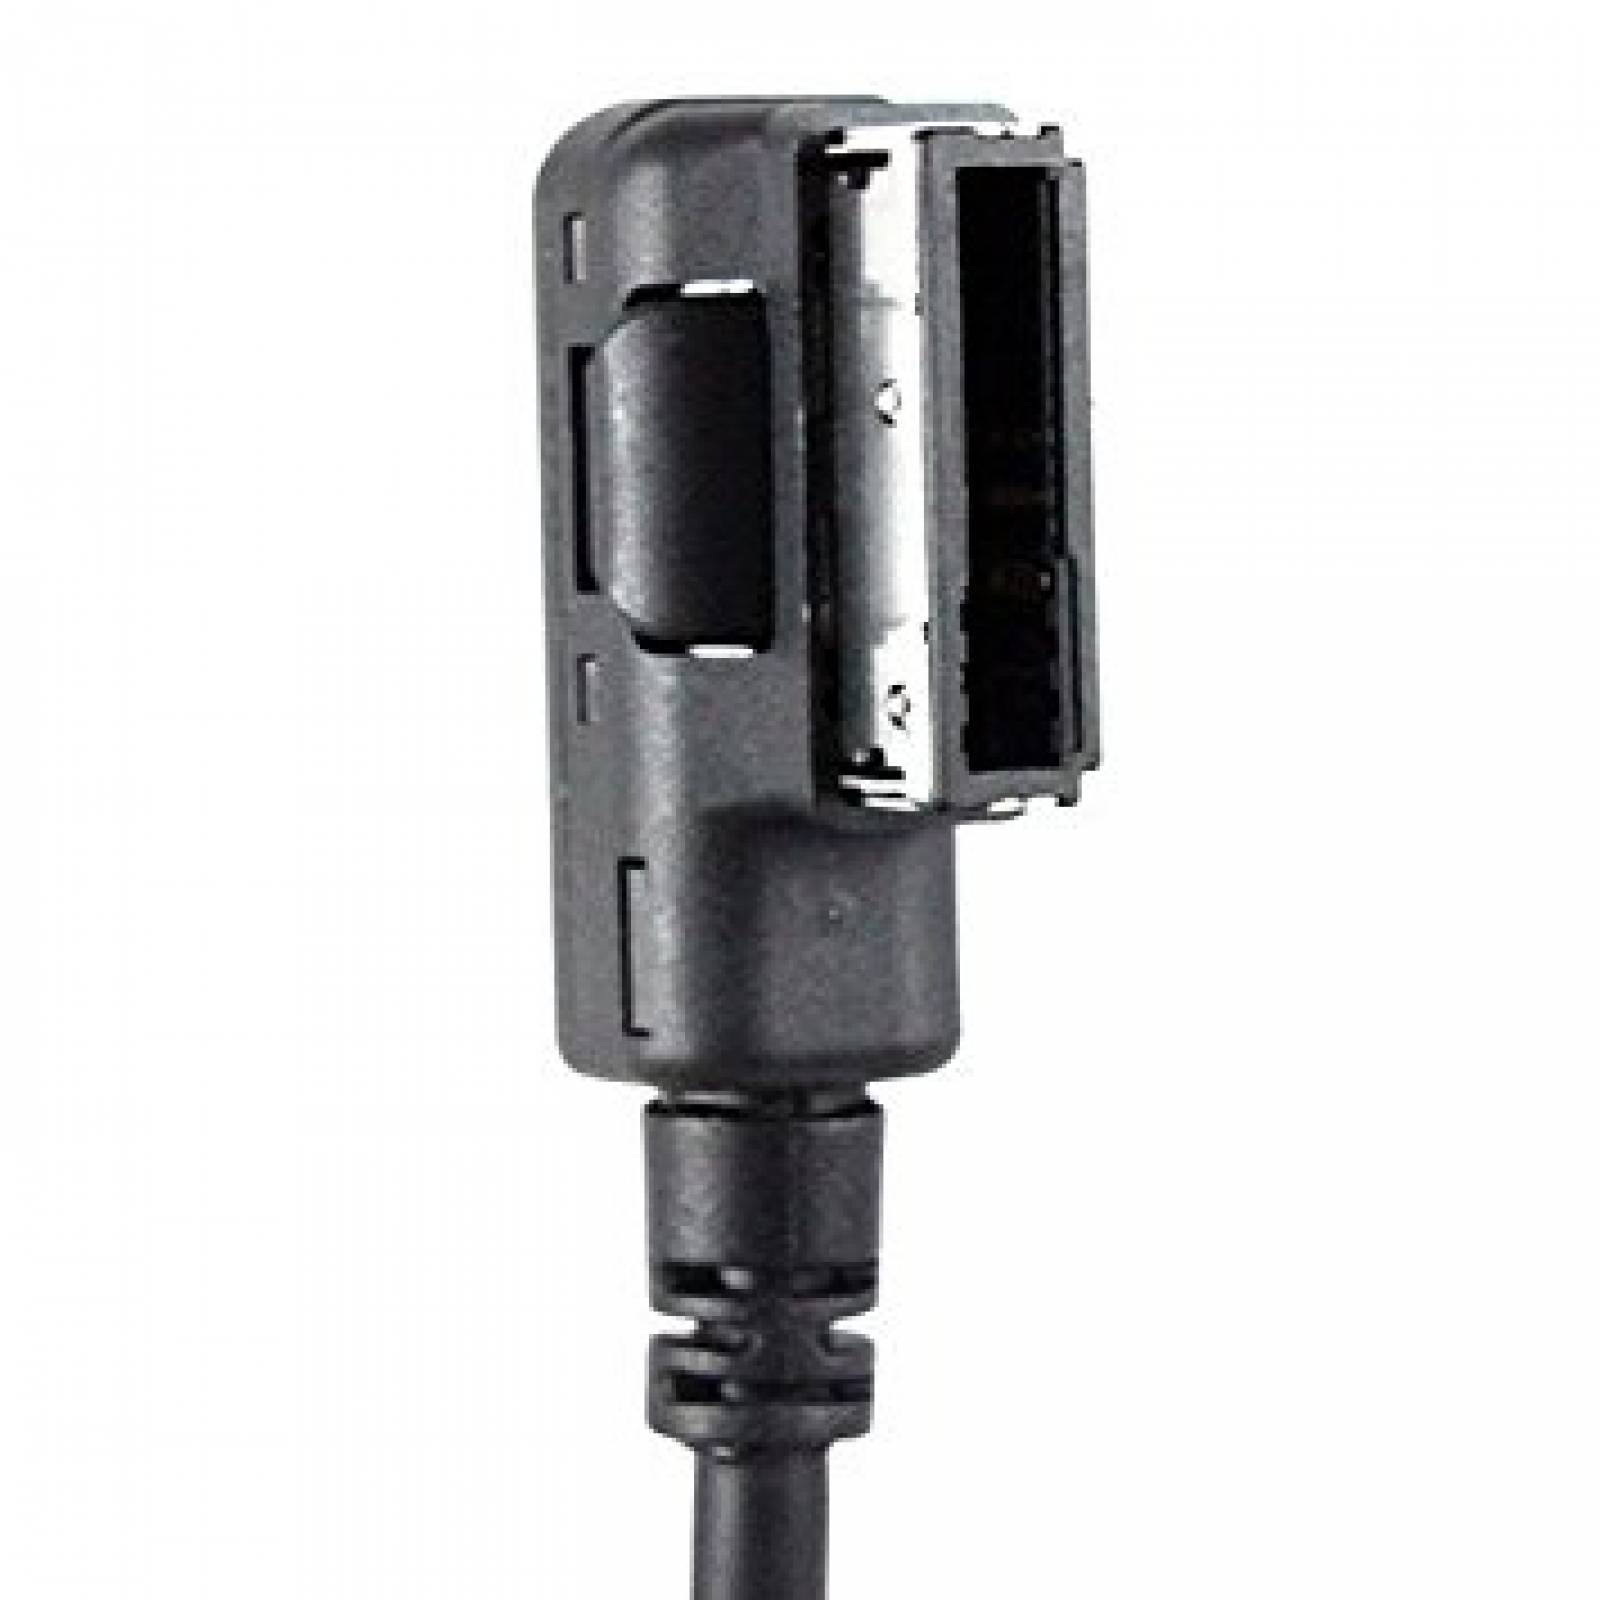 Xtenzi auxiliar Cable Audi MMI MDI AMI 4F0051510G USB Audio